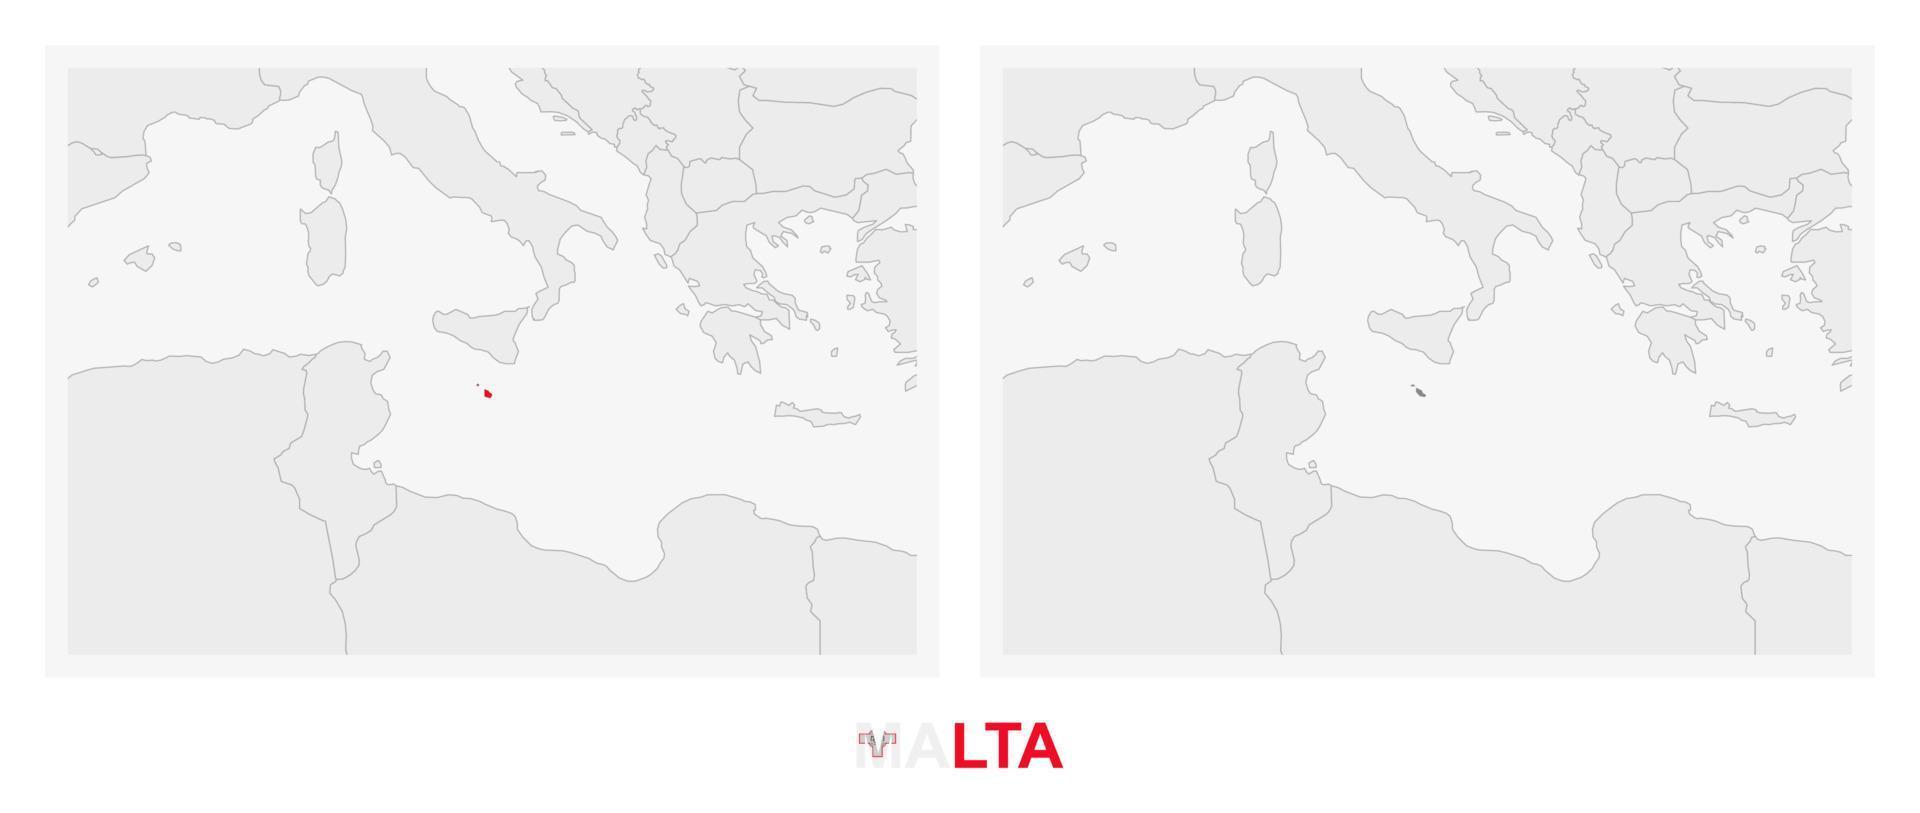 dos versiones del mapa de malta, con la bandera de malta y resaltada en gris oscuro. vector